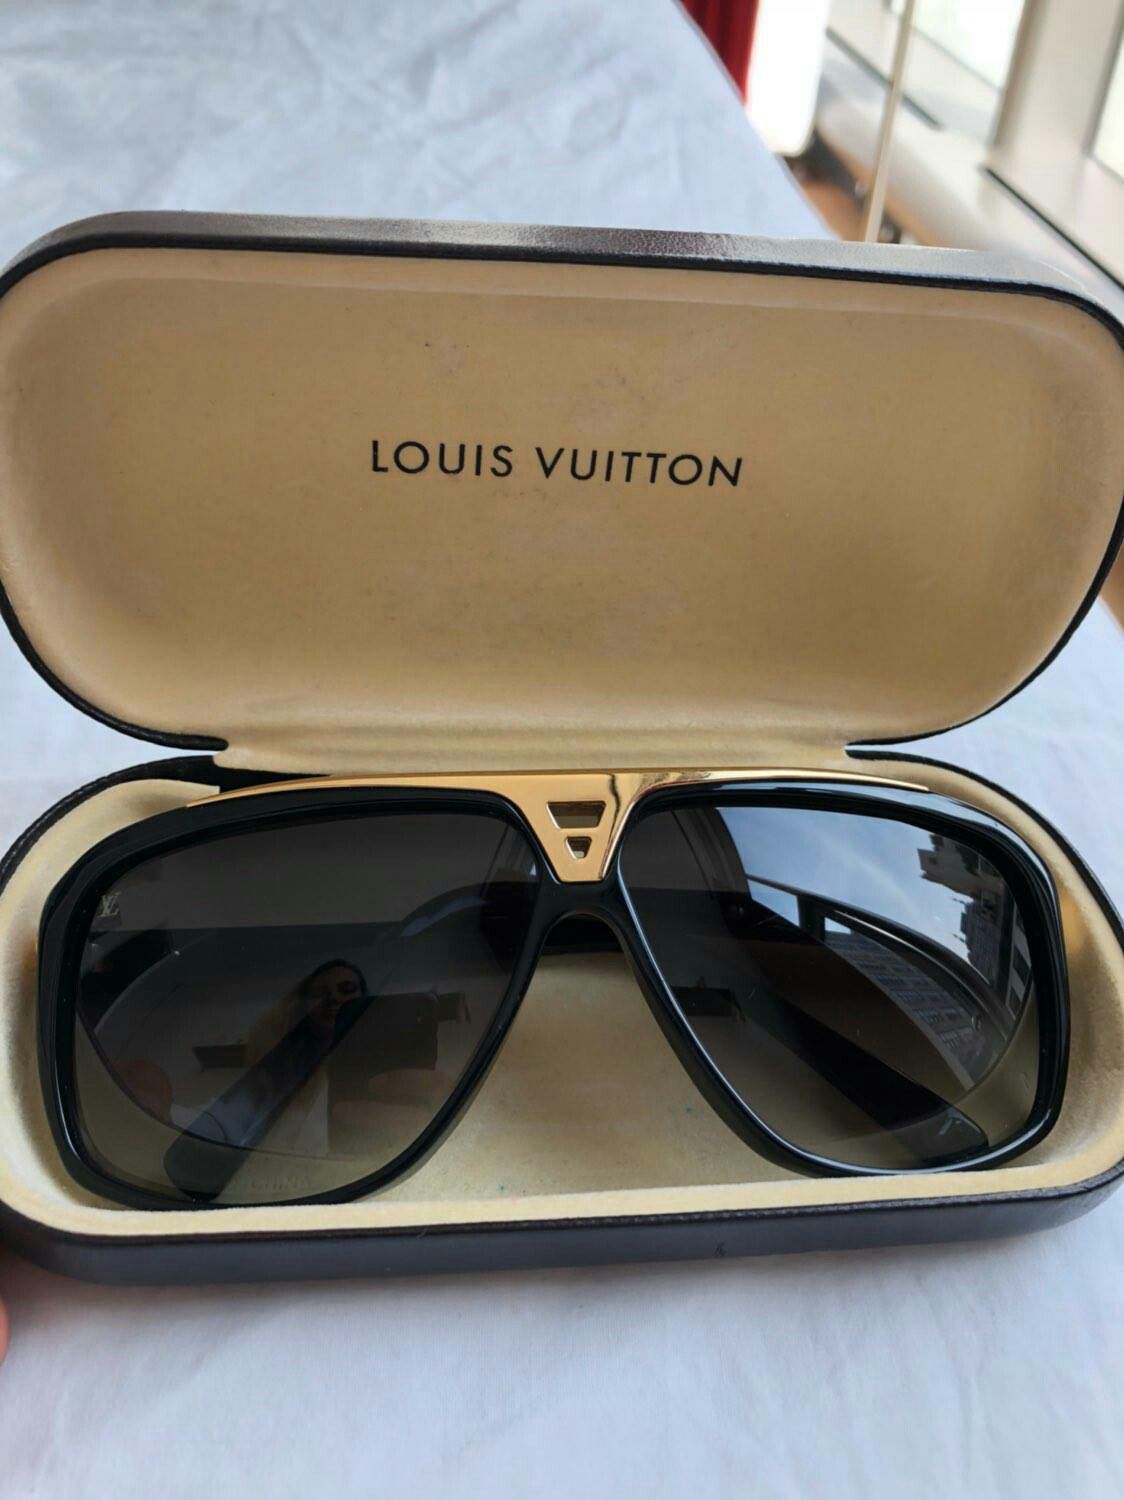 Louis Vuitton Evidence Designer Sunglasses for Men or Women for